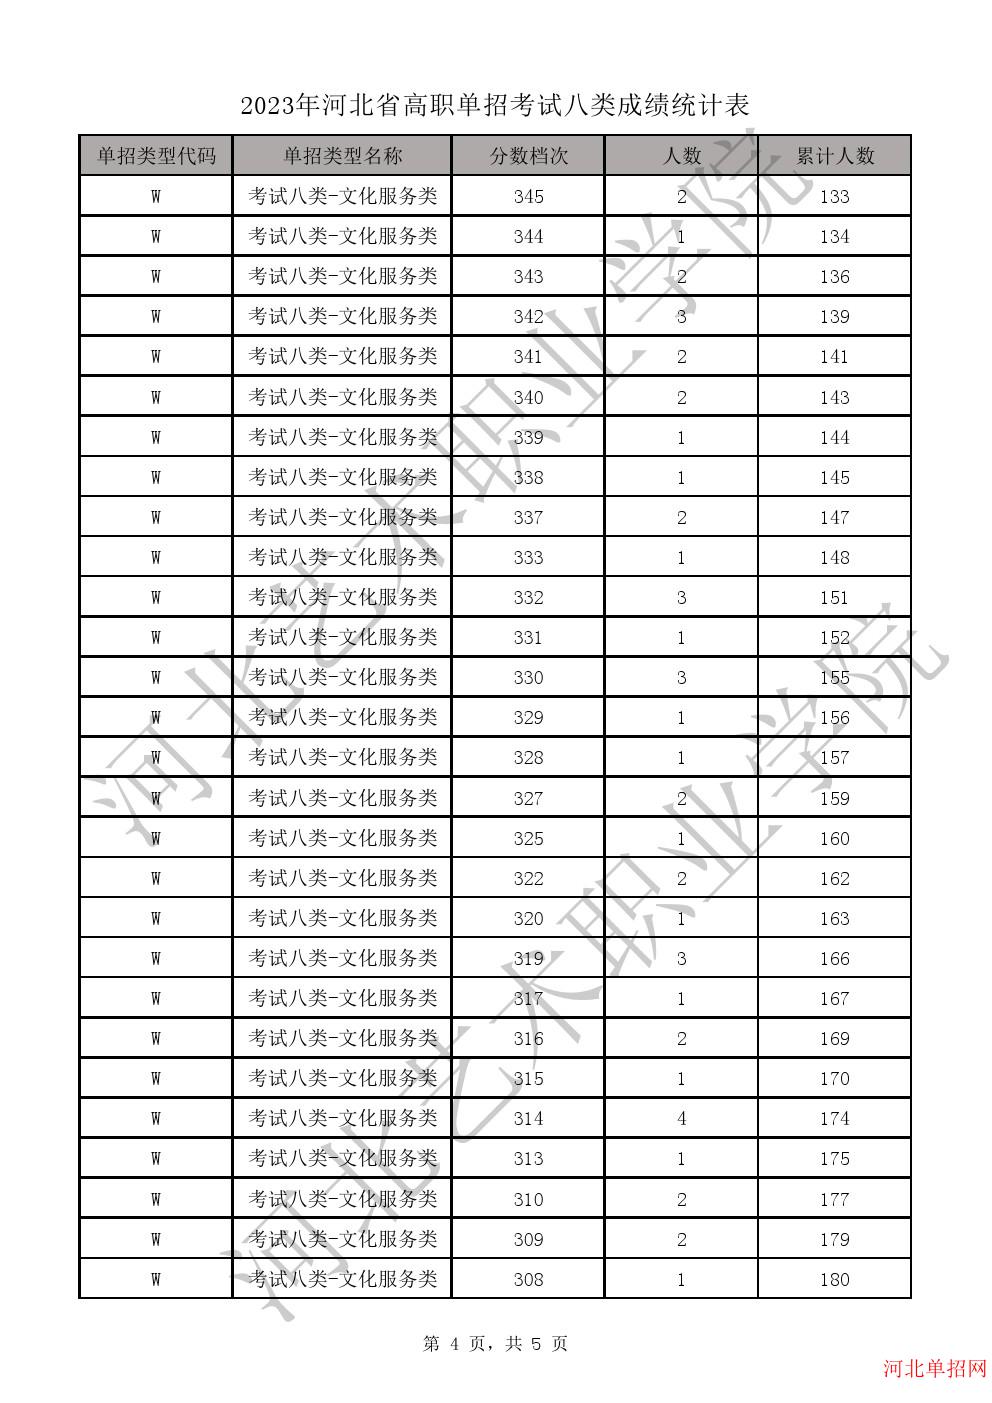 2023年河北省高职单招考试八类成绩统计表-W文化服务类一分一档表 图4